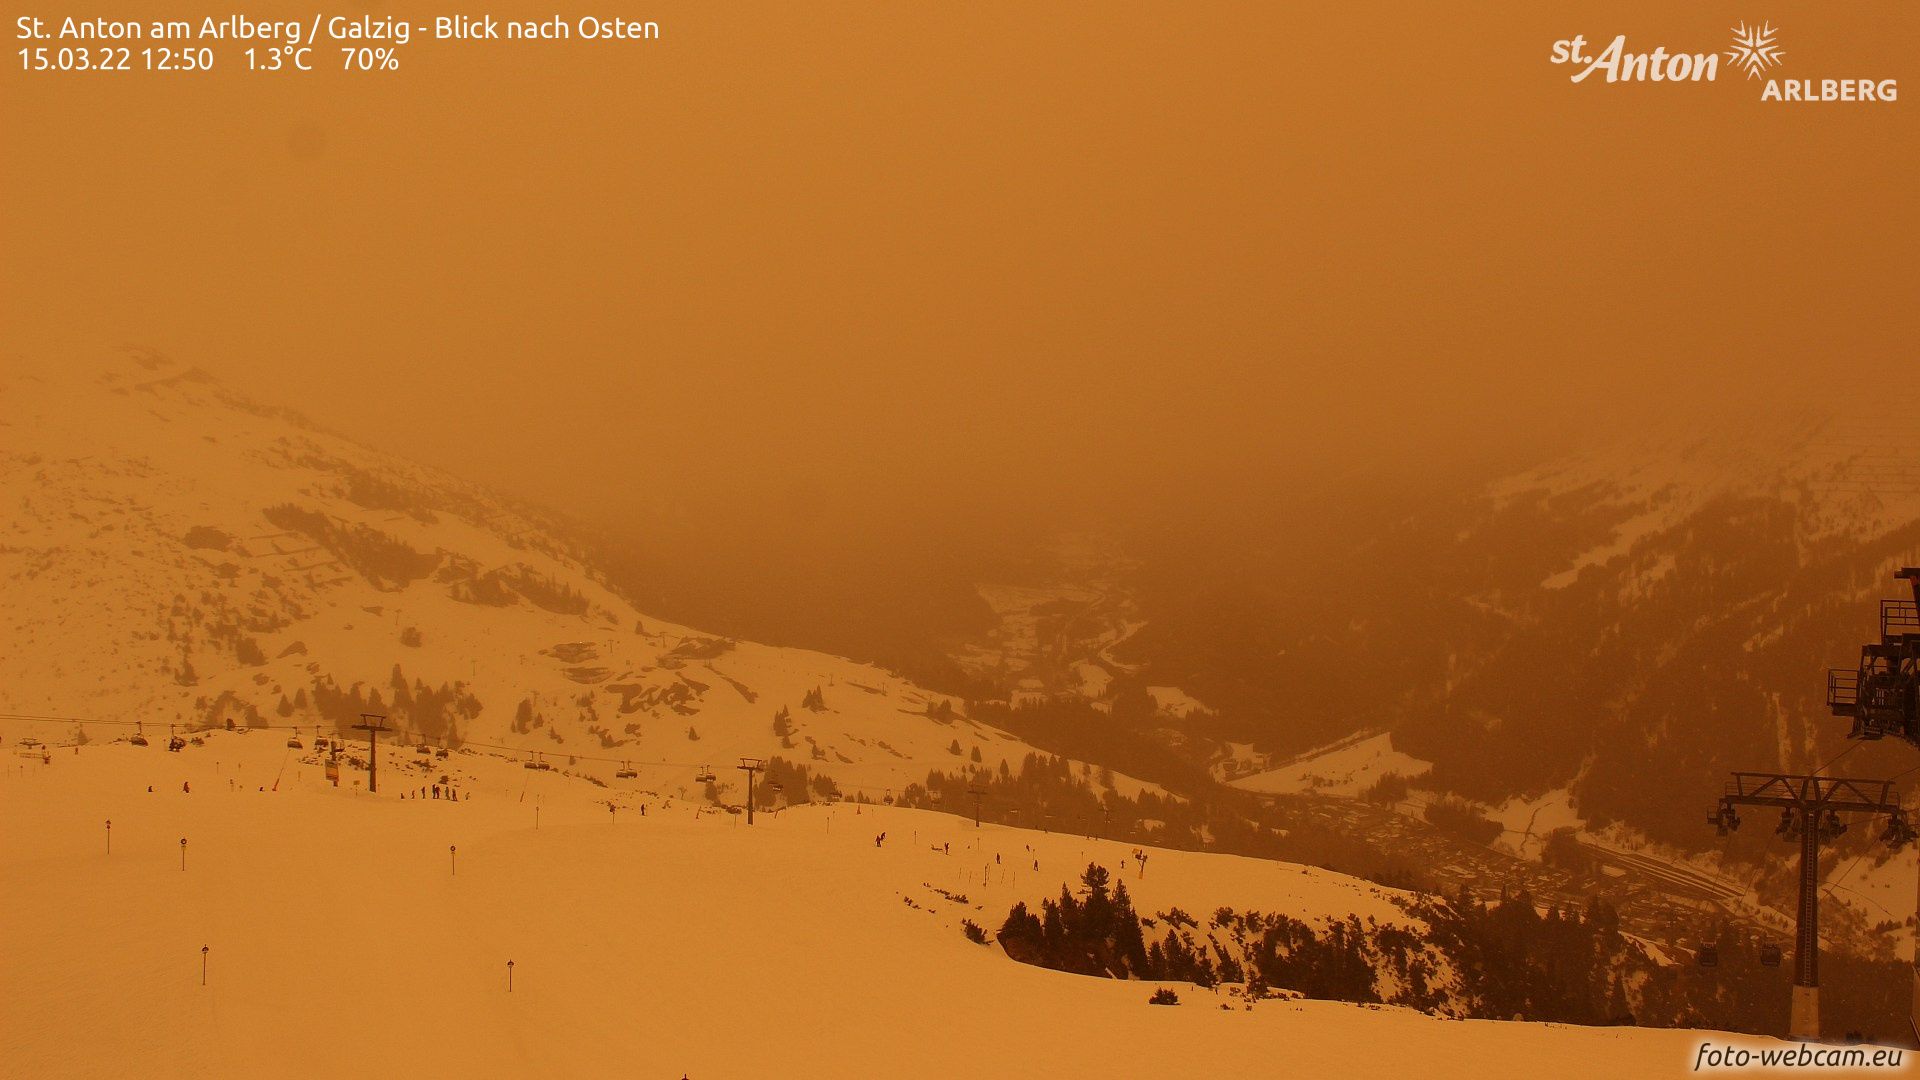 Desert conditions yesterday in Sankt Anton (foto-webcam.eu)